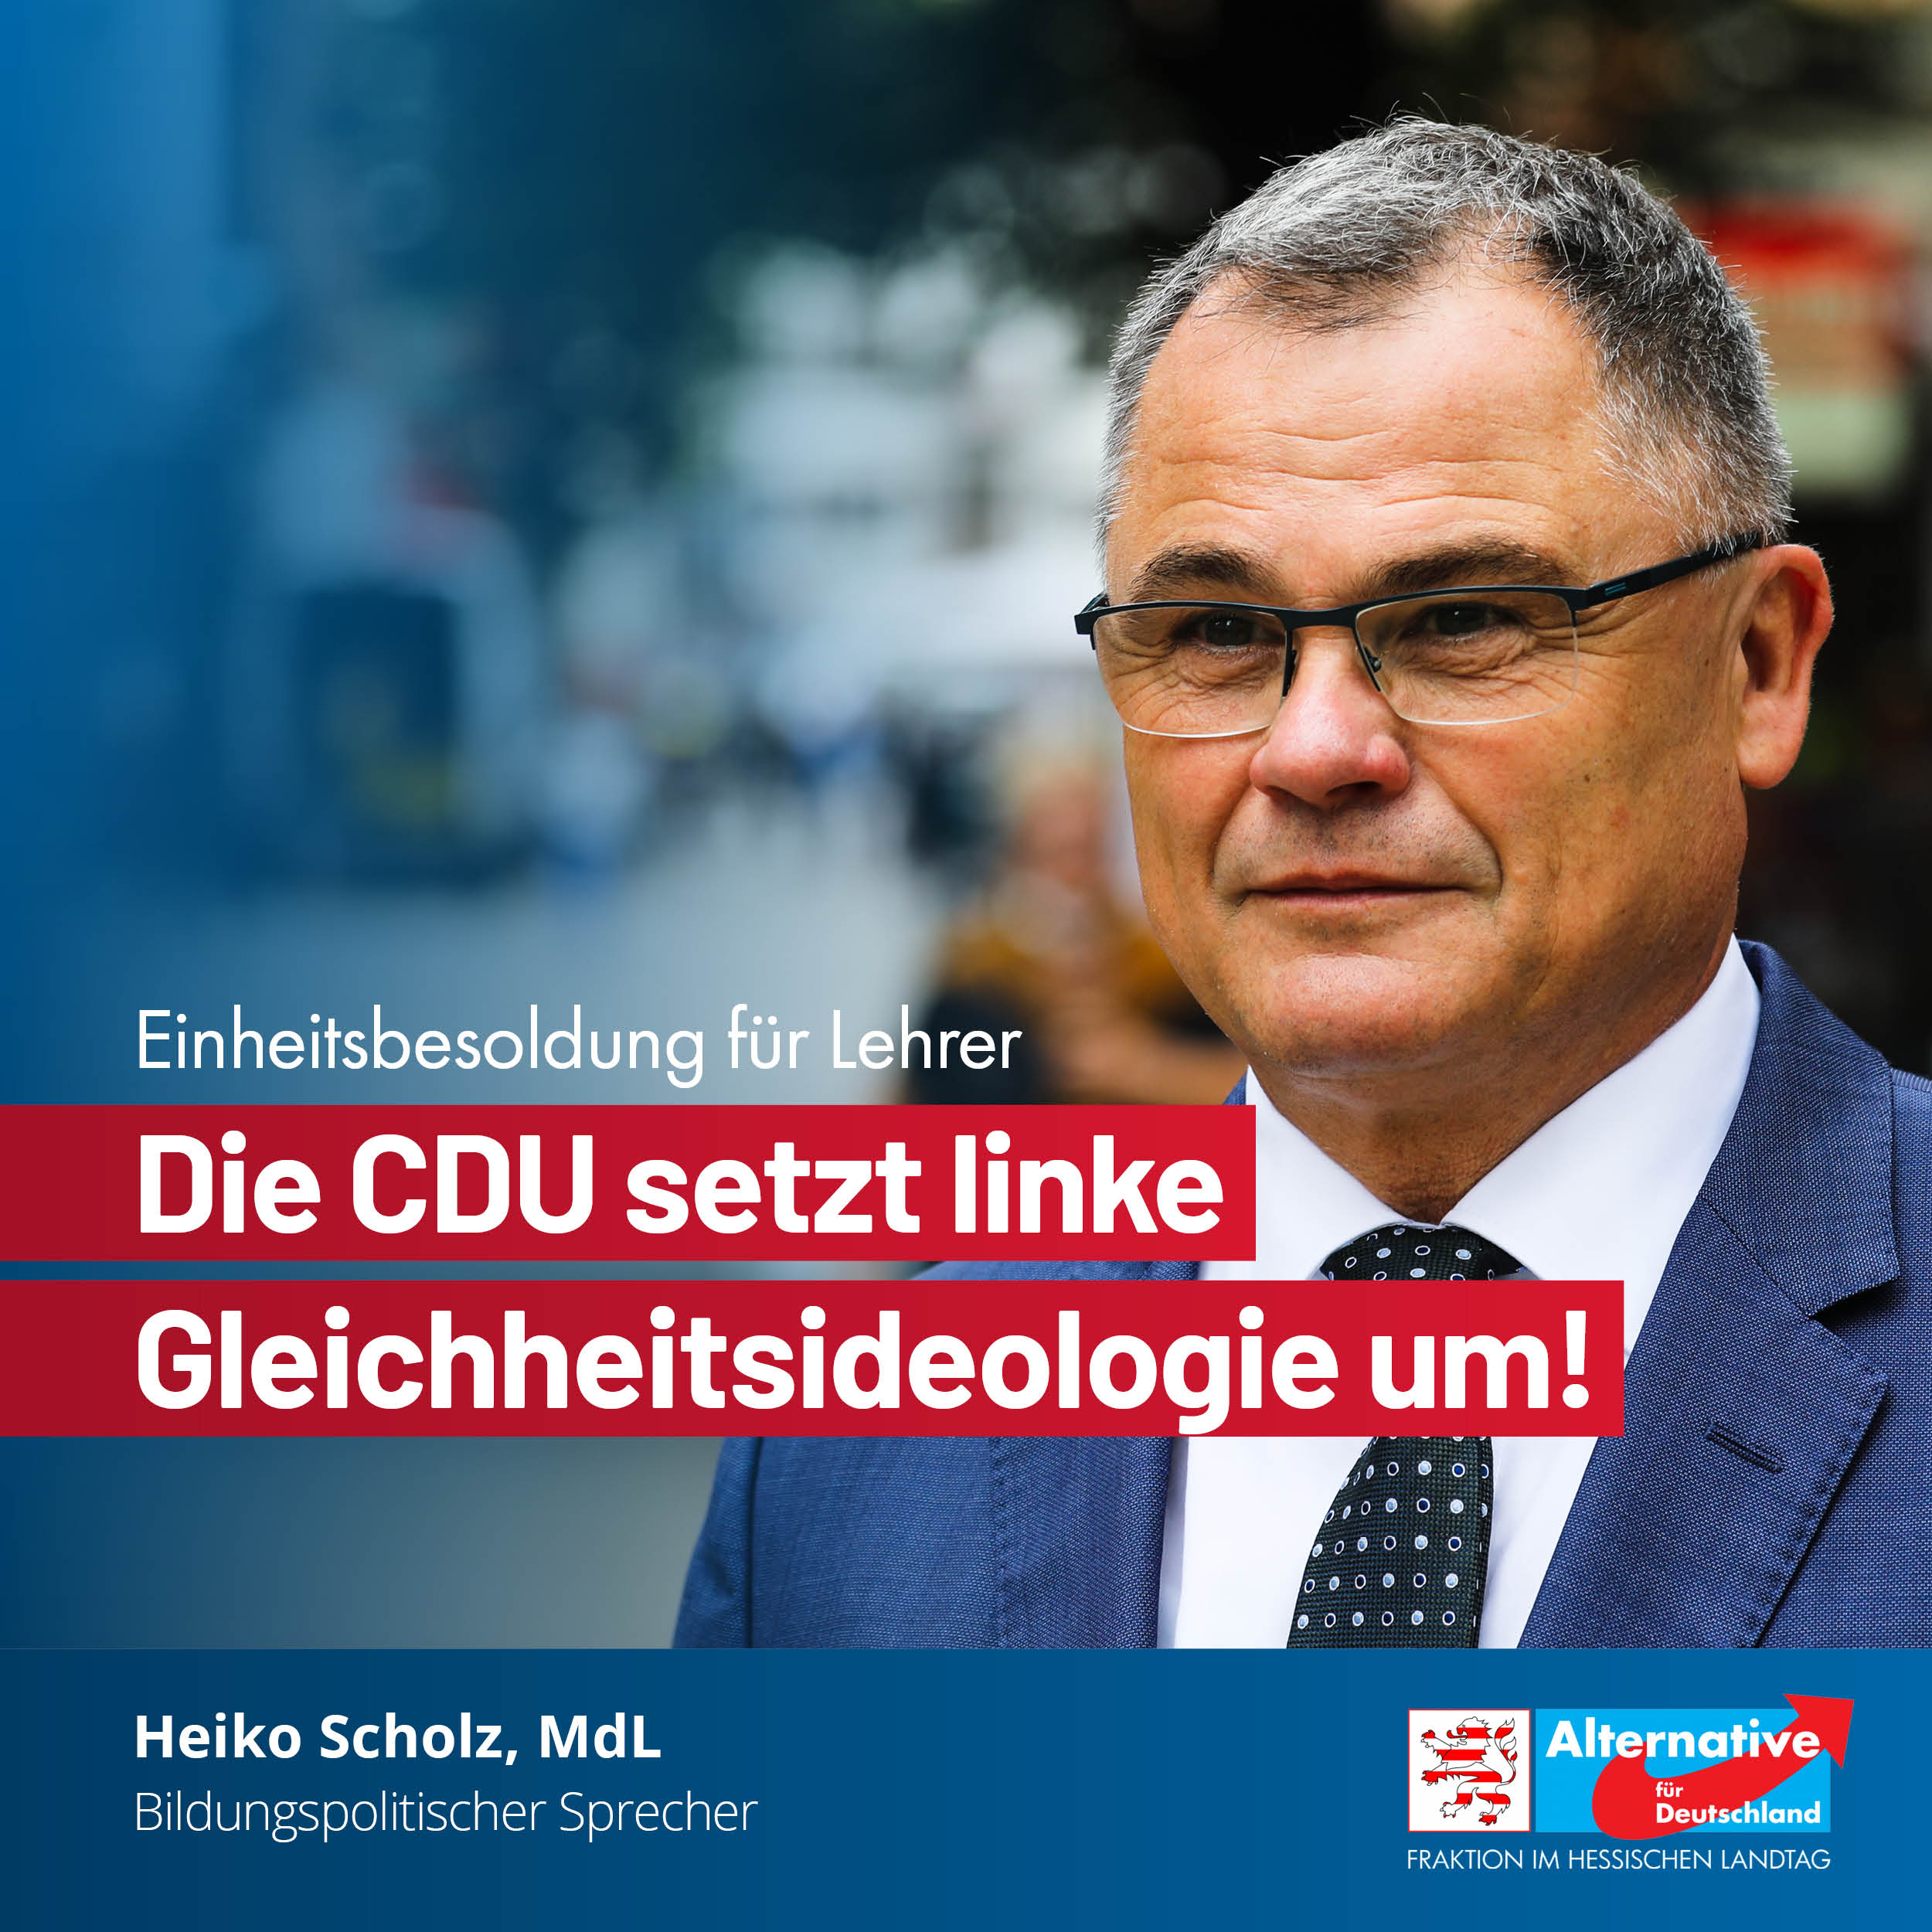 You are currently viewing Einheitsbesoldung für Lehrer: Die CDU setzt linke Gleichheitsideologie um!